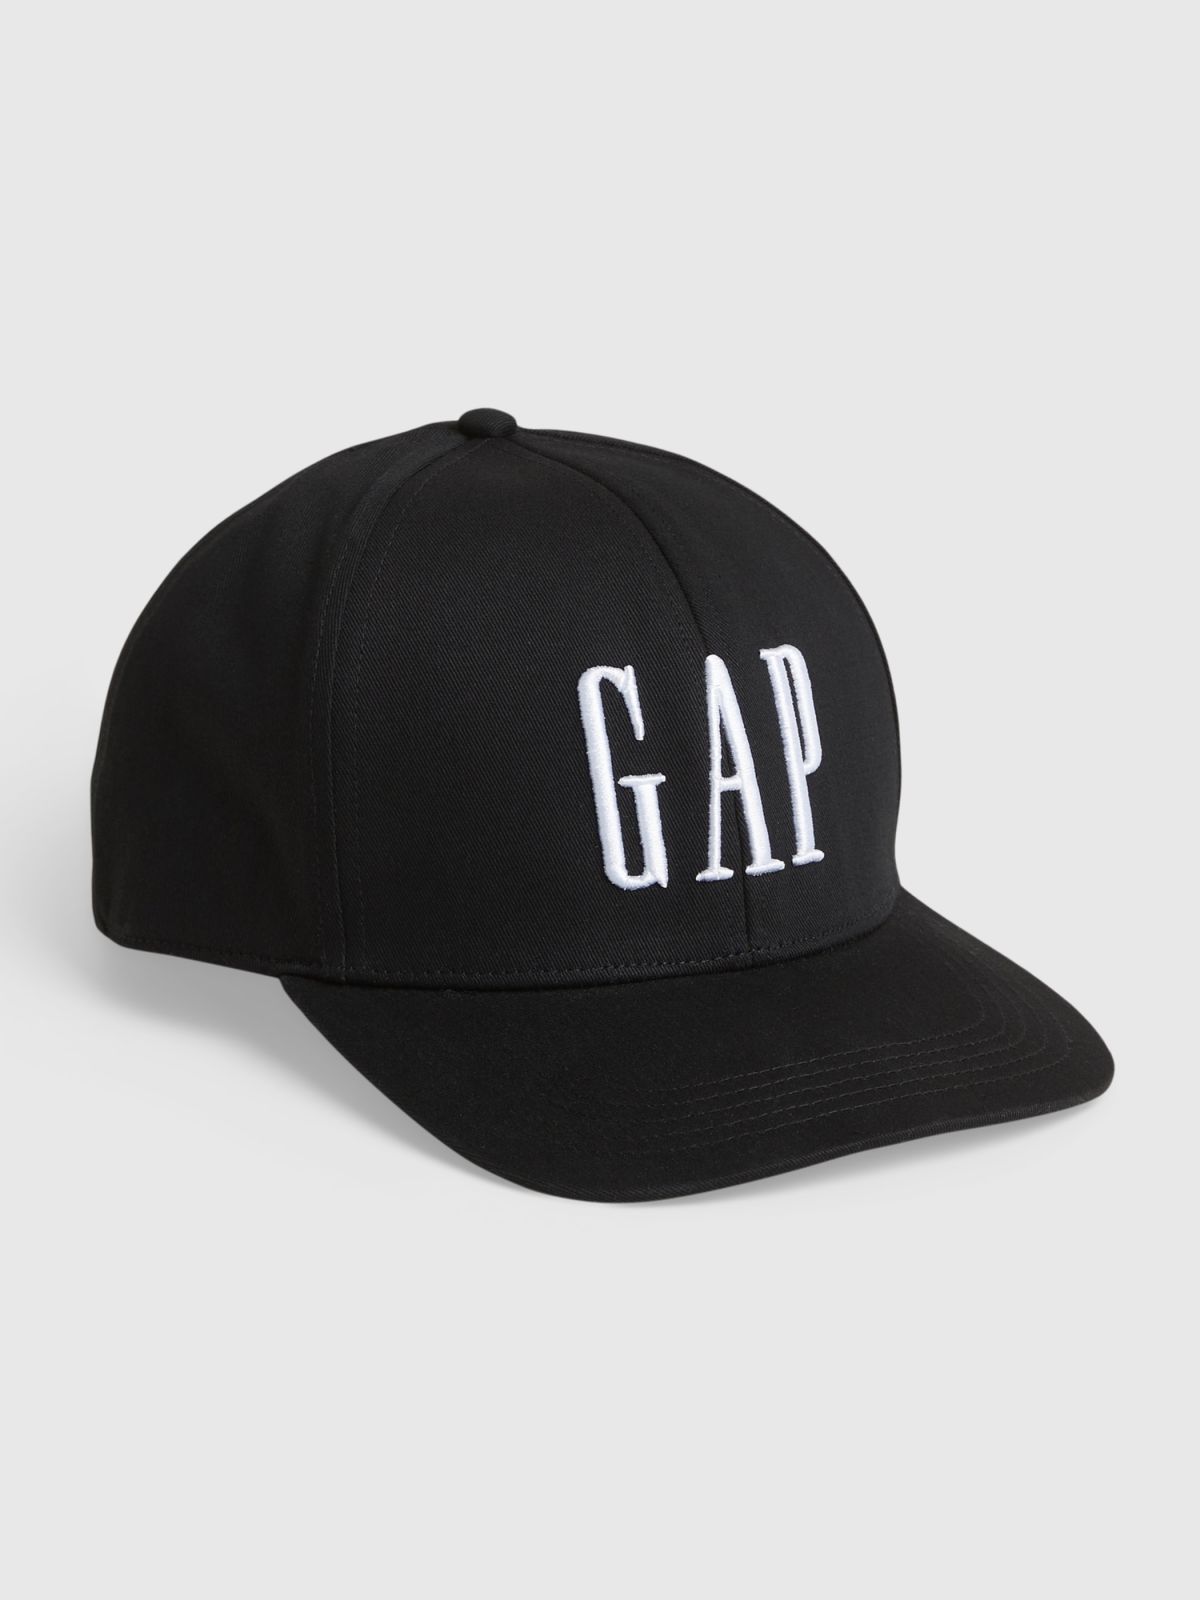  כובע מצחייה עם הדפס לוגו רקום של GAP